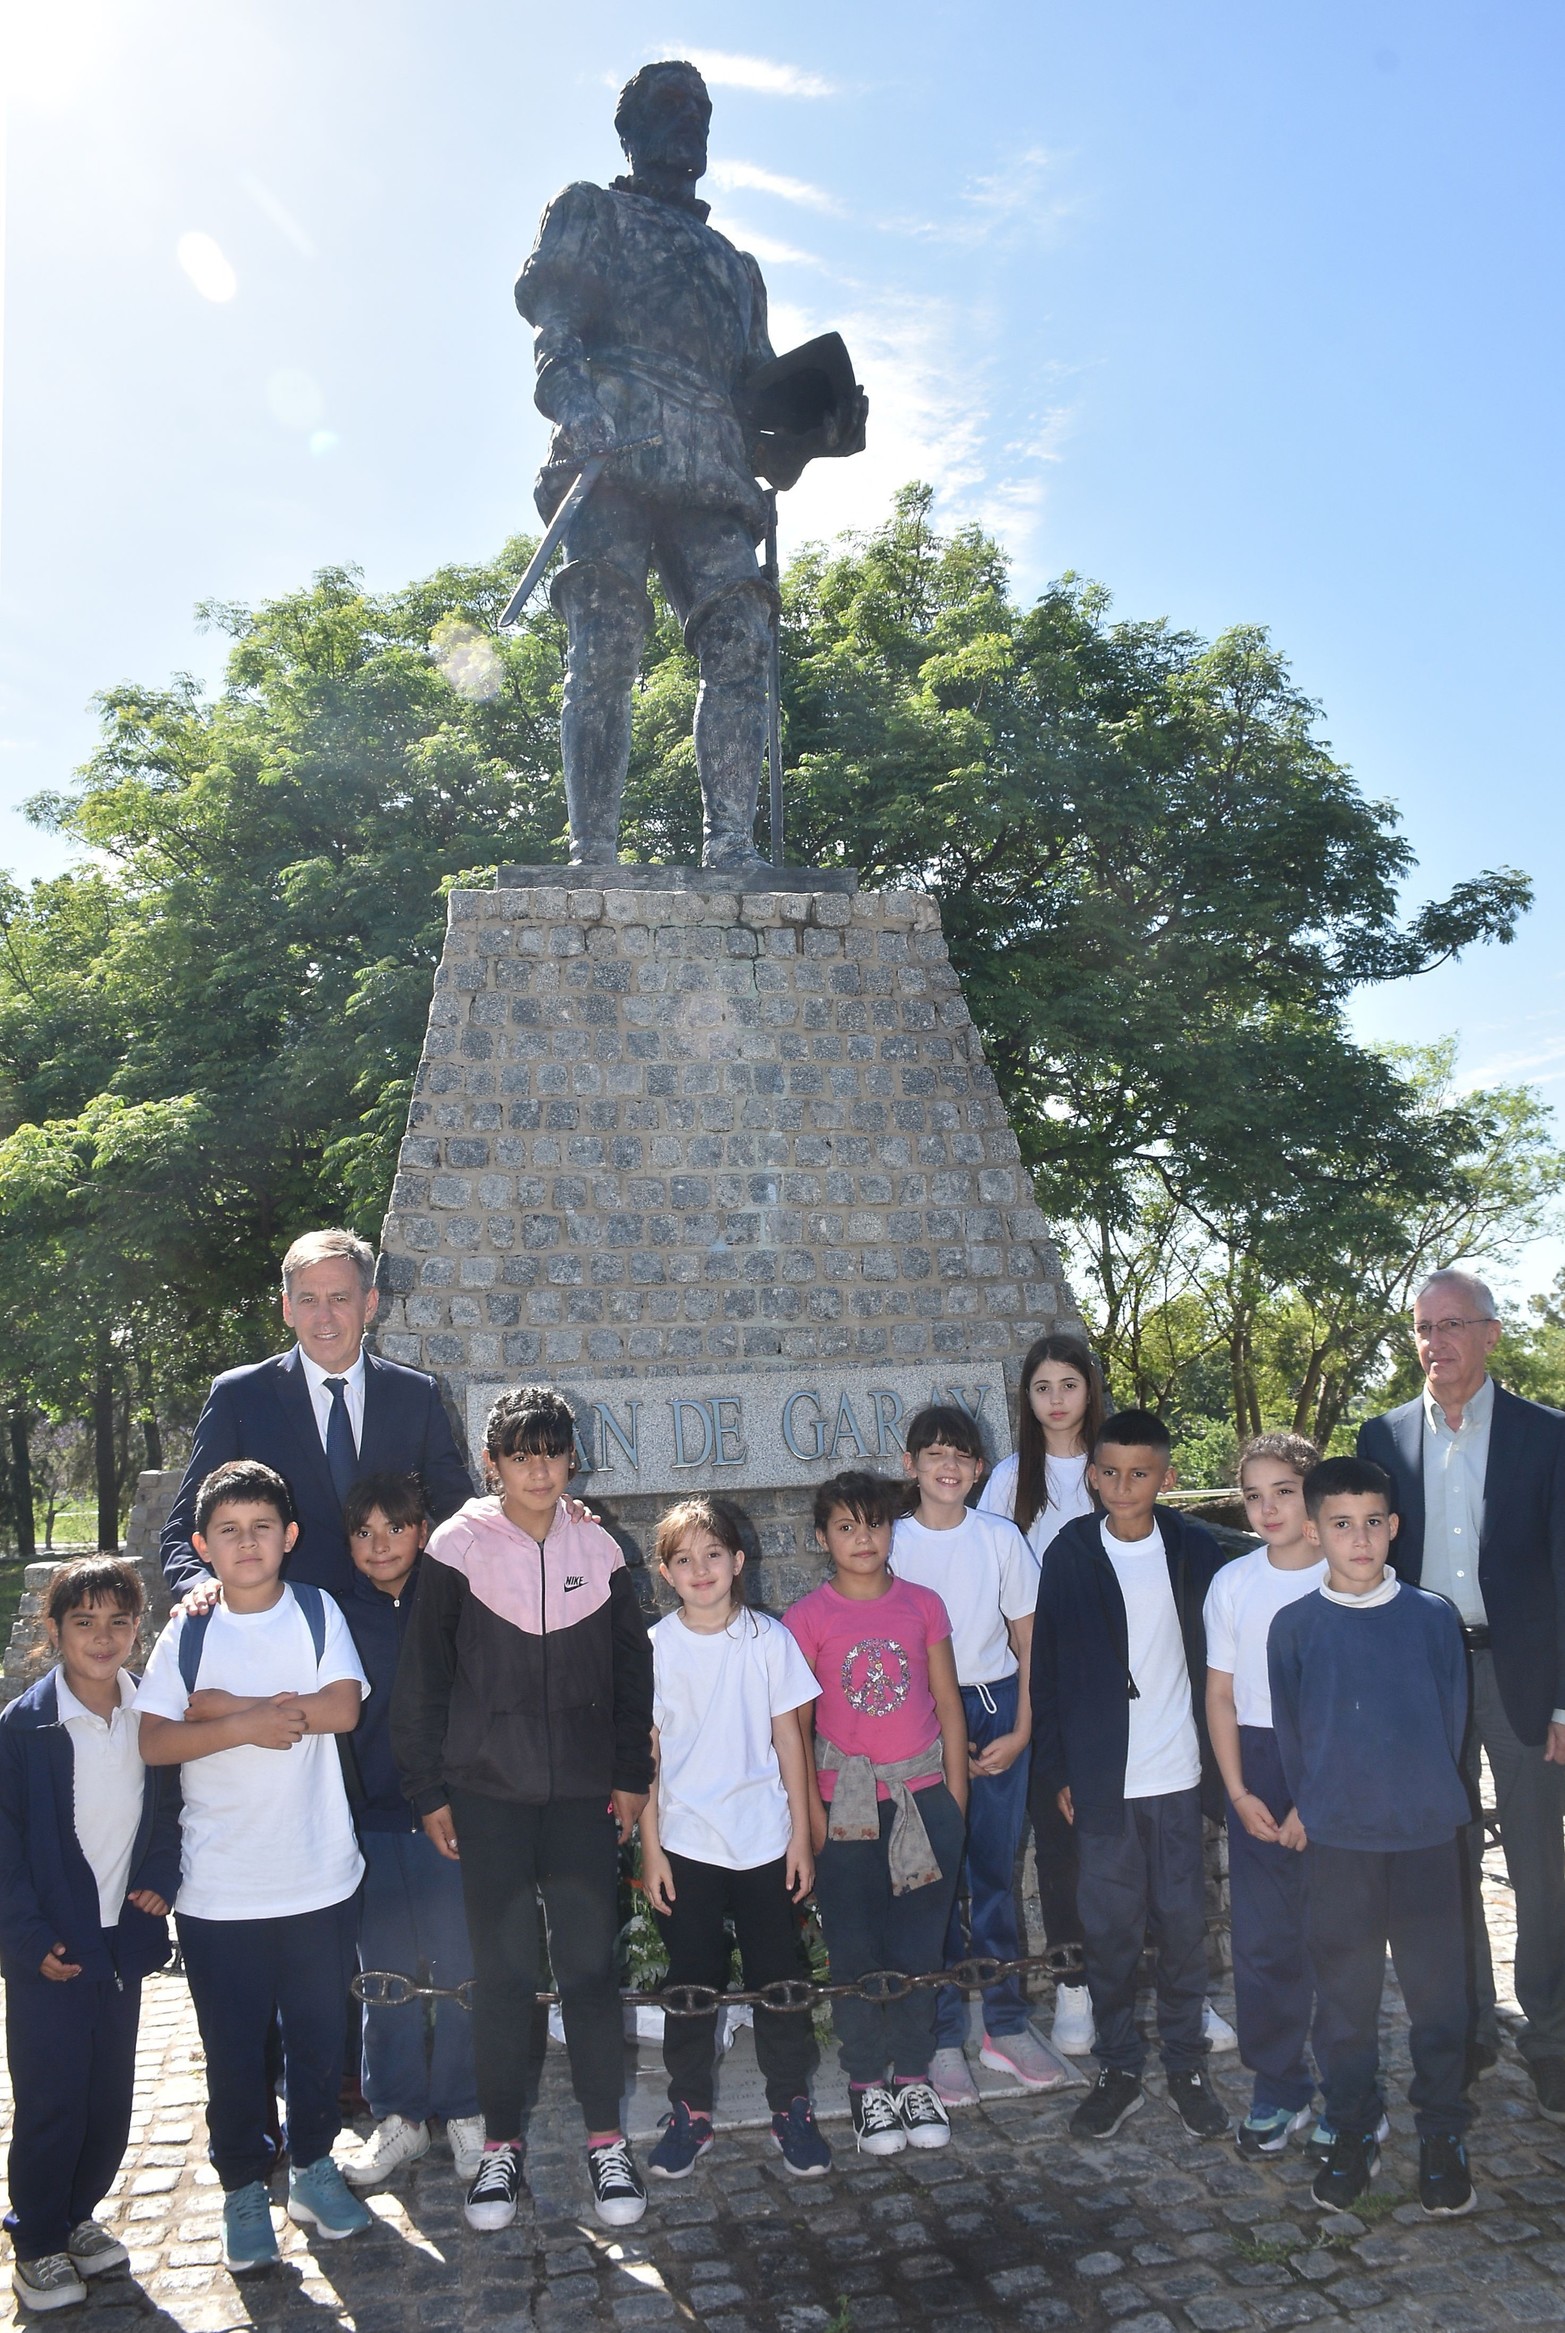 Alumnos de una escuela de Venado Tuerto acompañaron al intendente hasta el monumento a Juan de Garay